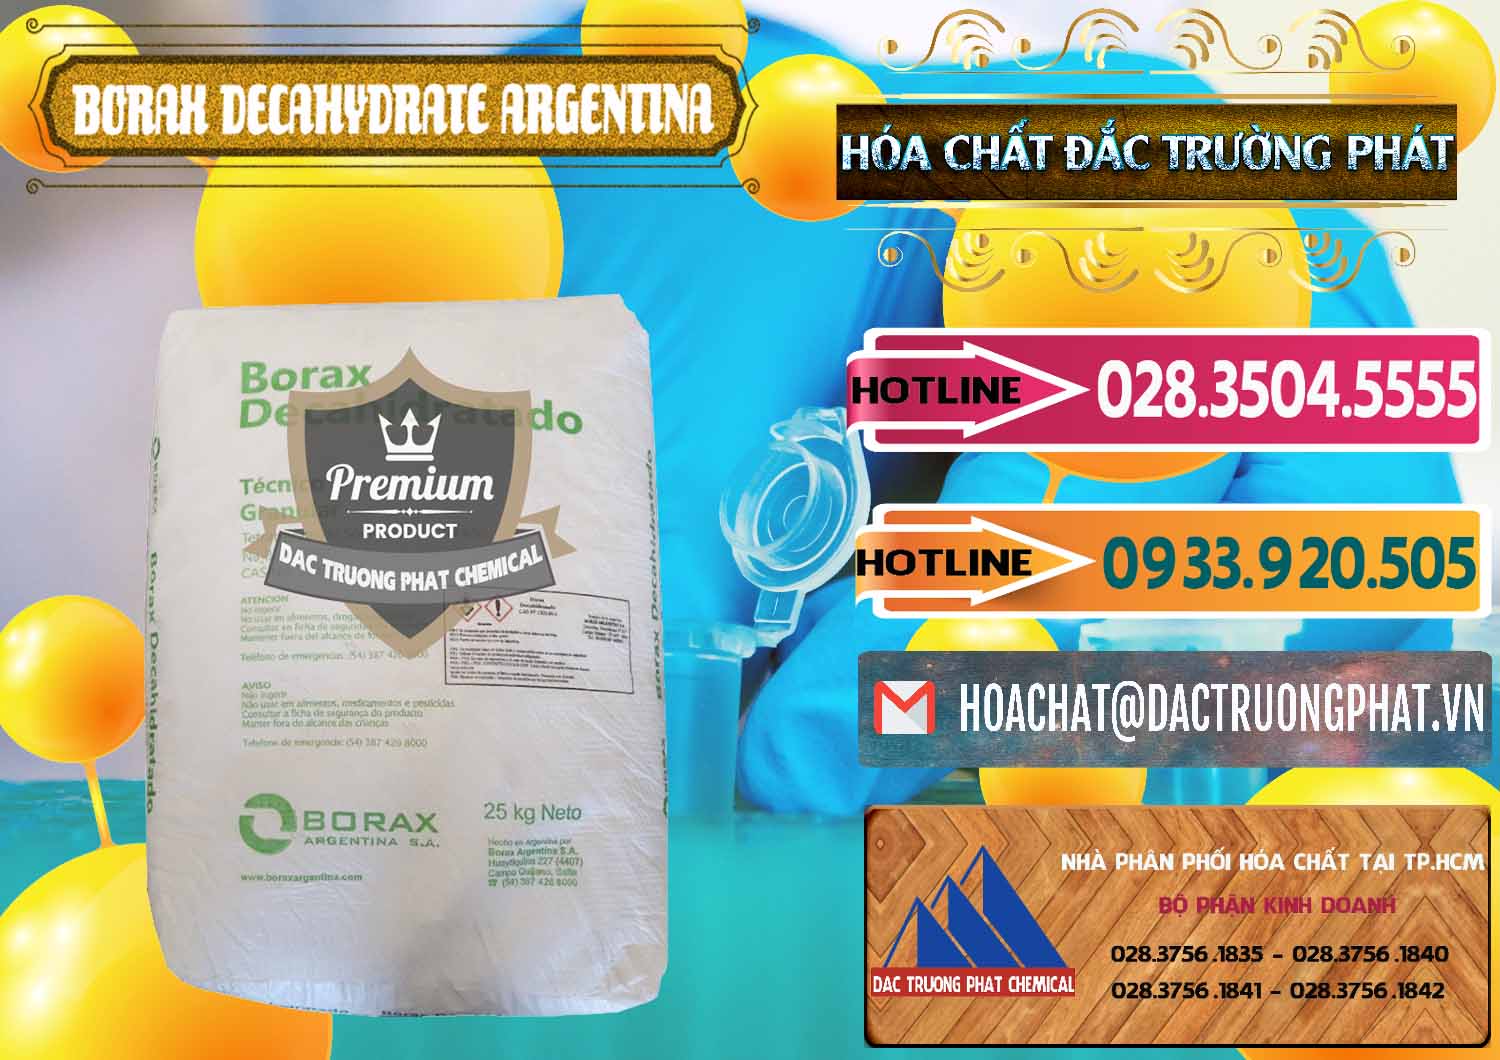 Công ty bán & cung cấp Borax Decahydrate Argentina - 0446 - Chuyên bán - phân phối hóa chất tại TP.HCM - dactruongphat.vn